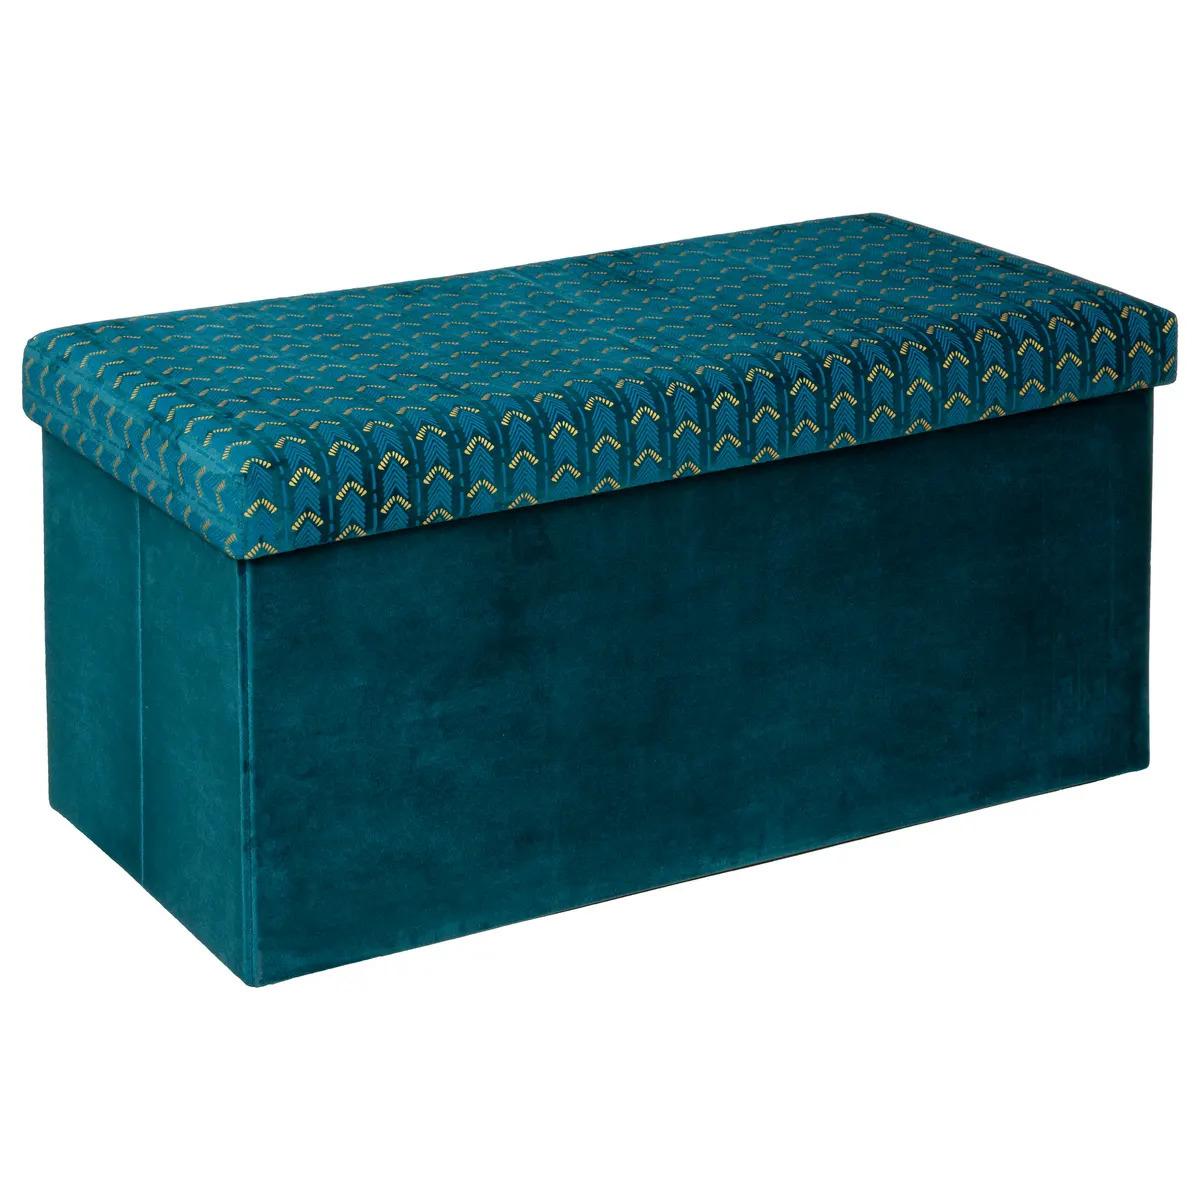 Poef-krukje-hocker Royal Opvouwbare zit opslag box fluweel Smaragd groen 76 x 38 x 38 cm